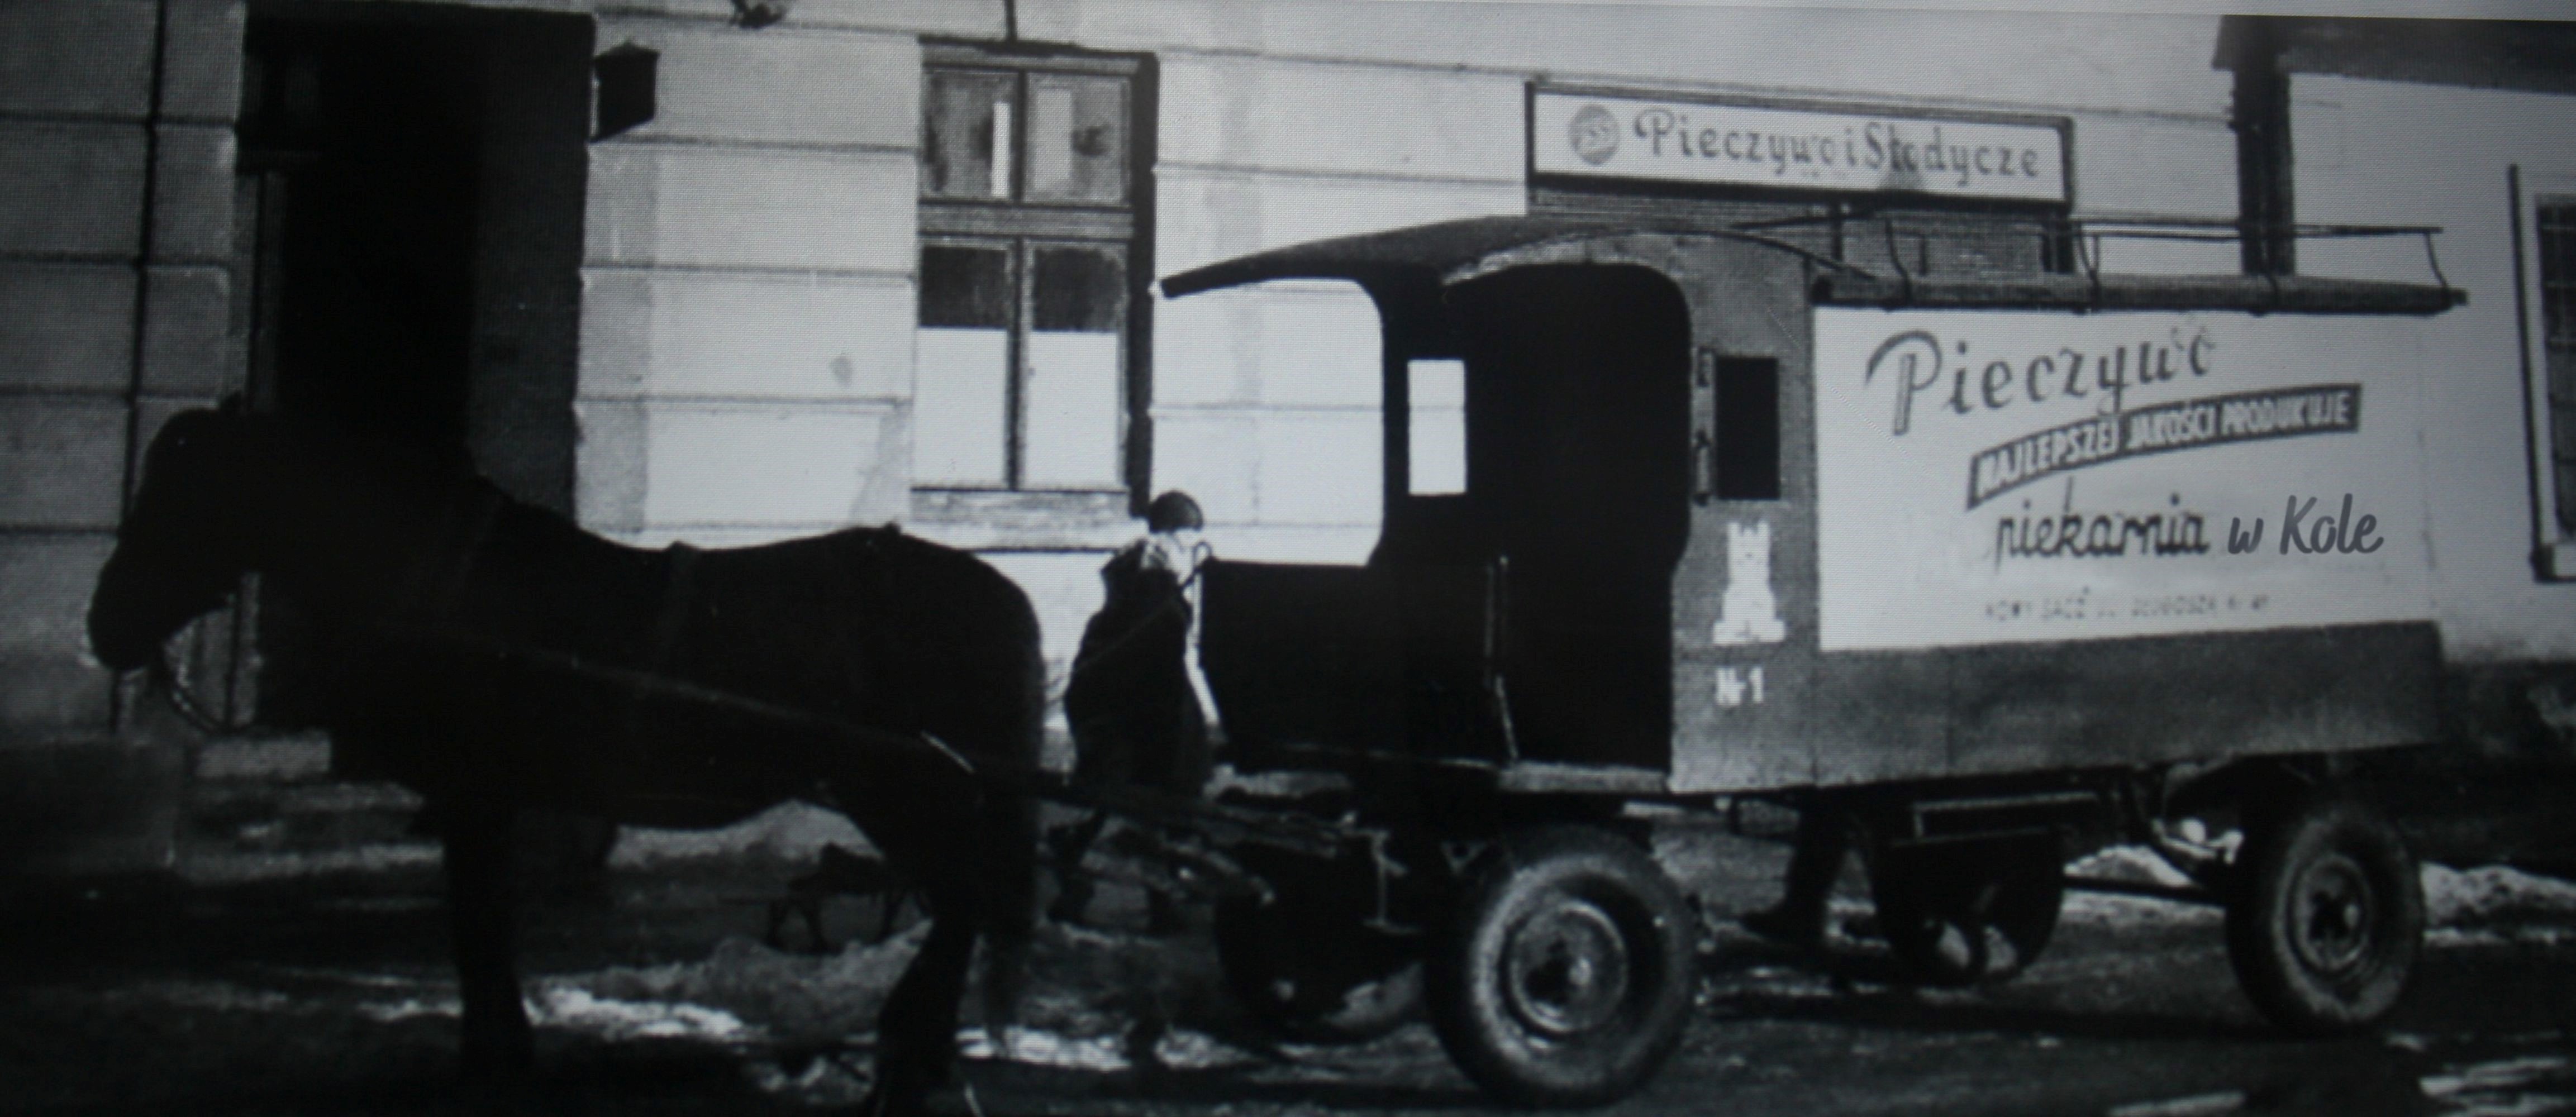 Zdjęcie przedstawia konny furgon do przewozu pieczywa z lat 70-tych XX wieku